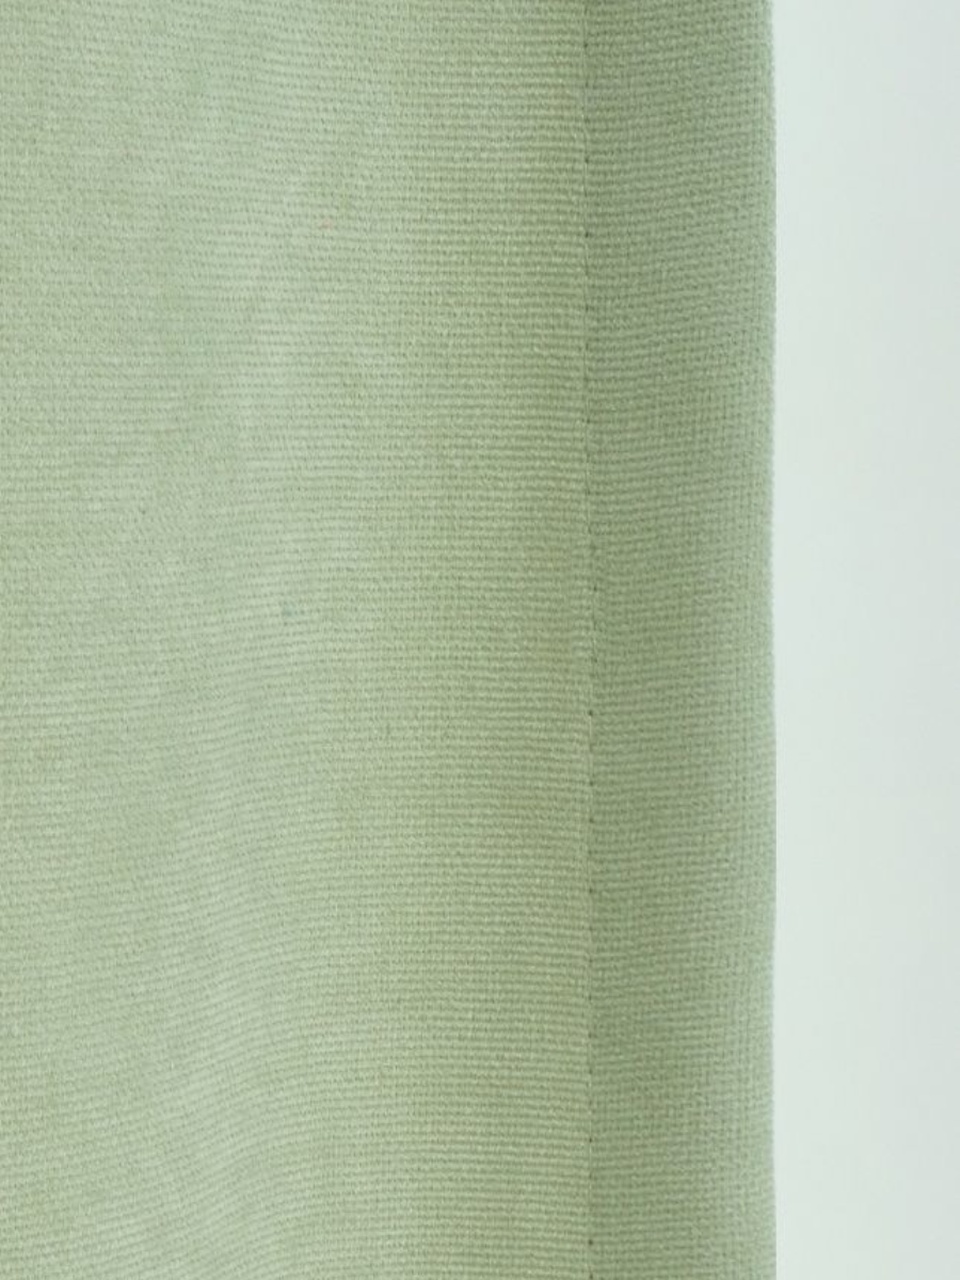 Портьеры Канвас светло-зеленый - 600 ₽, заказать онлайн.